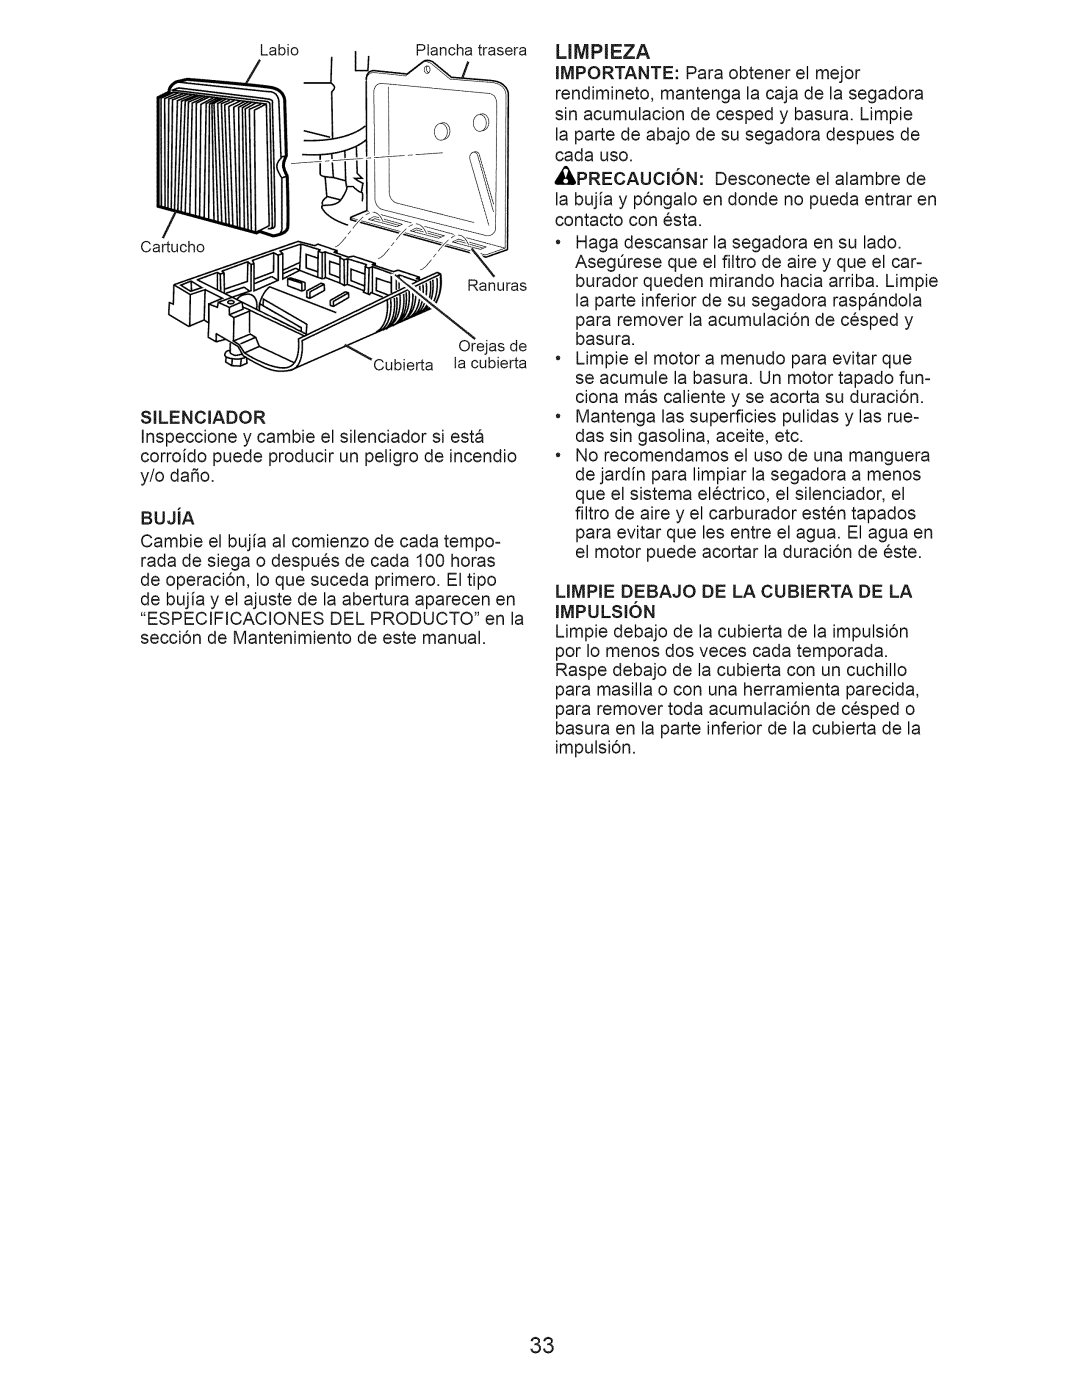 Craftsman 917.376390 manual Limpieza, LIMPIE DEBAJO DE LA CUBIERTA DE LA IMPULSI6N 